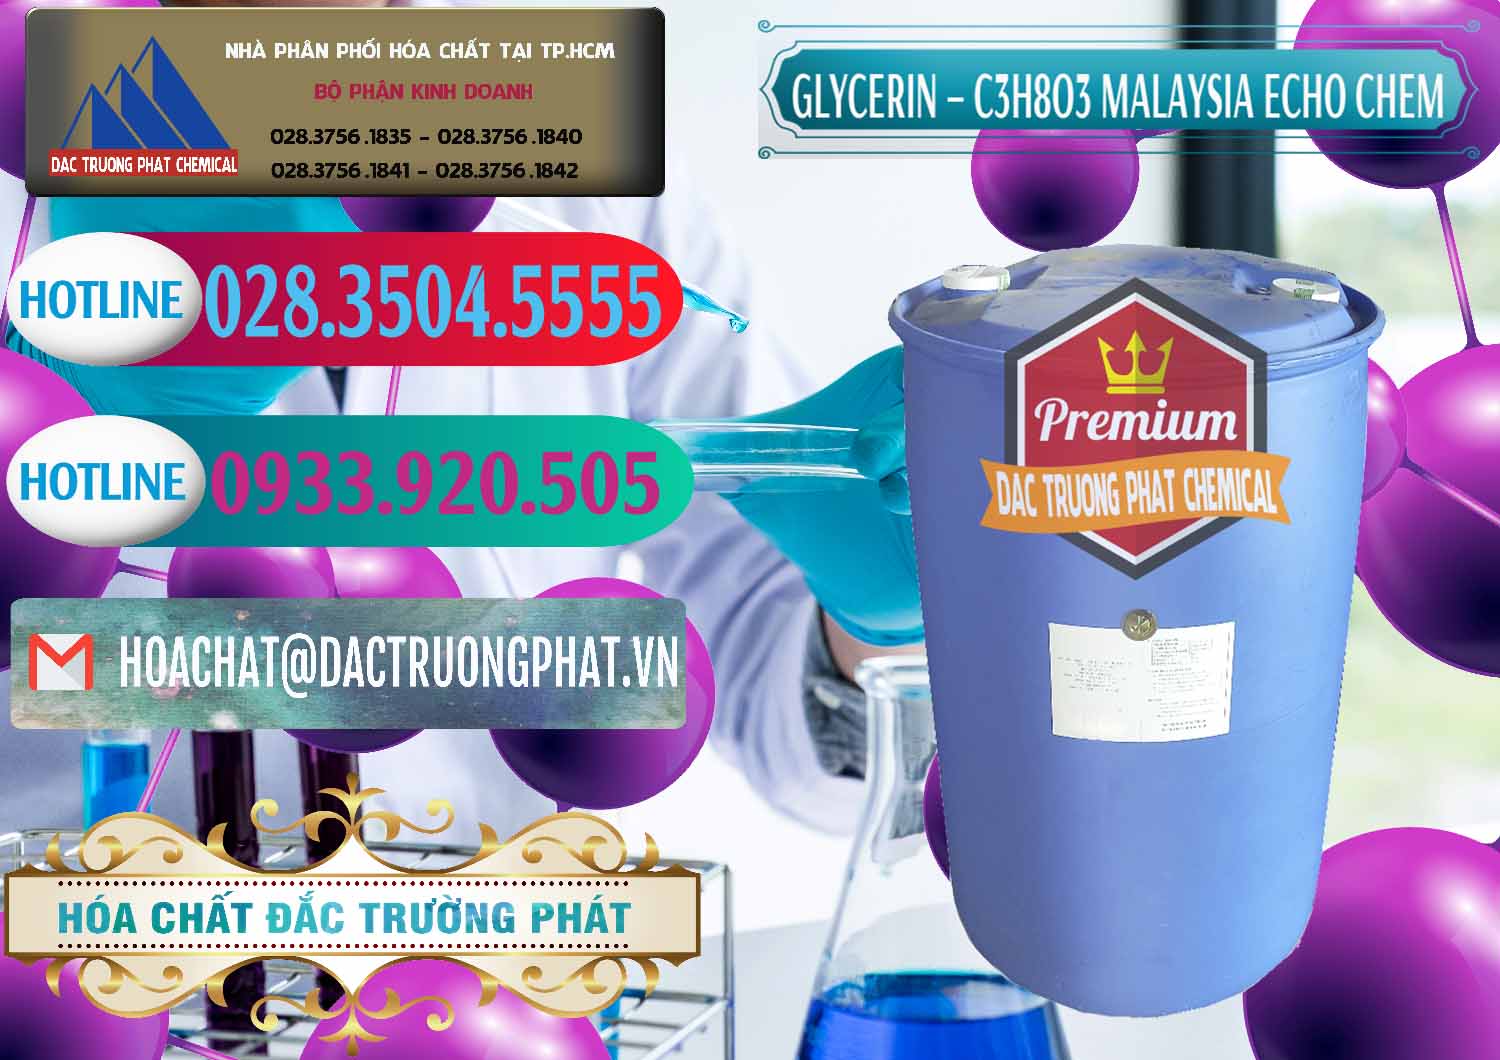 Chuyên kinh doanh & bán C3H8O3 - Glycerin 99.7% Echo Chem Malaysia - 0273 - Nhà phân phối ( bán ) hóa chất tại TP.HCM - truongphat.vn